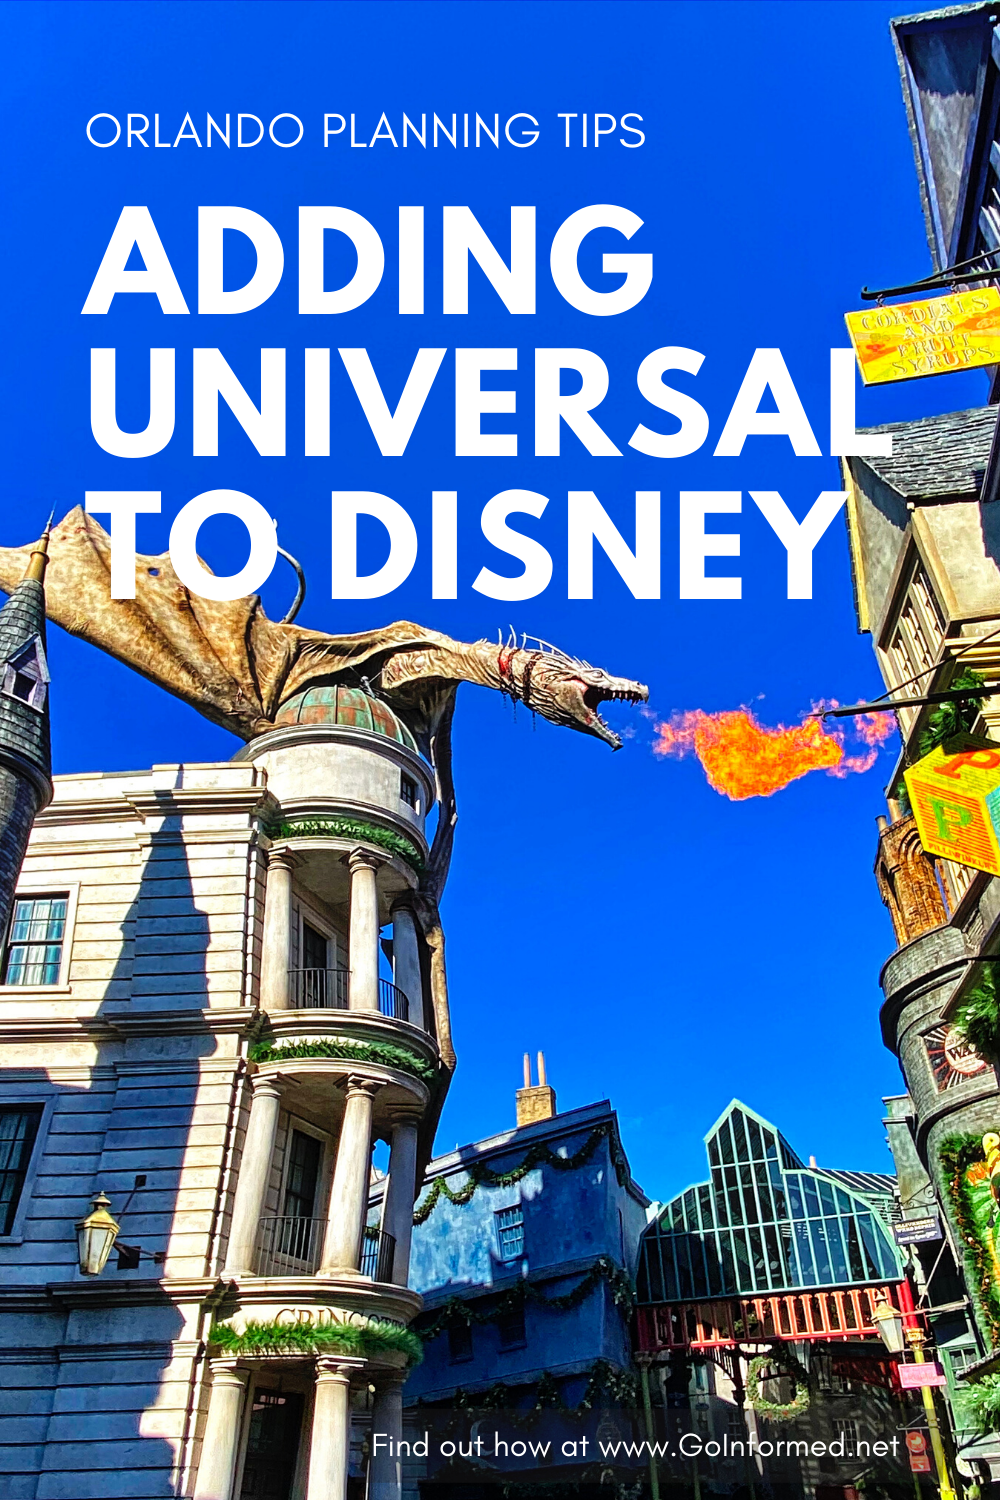  Hinzufügen eines Besuchs von Universal zu Ihrer Disney World-Reise